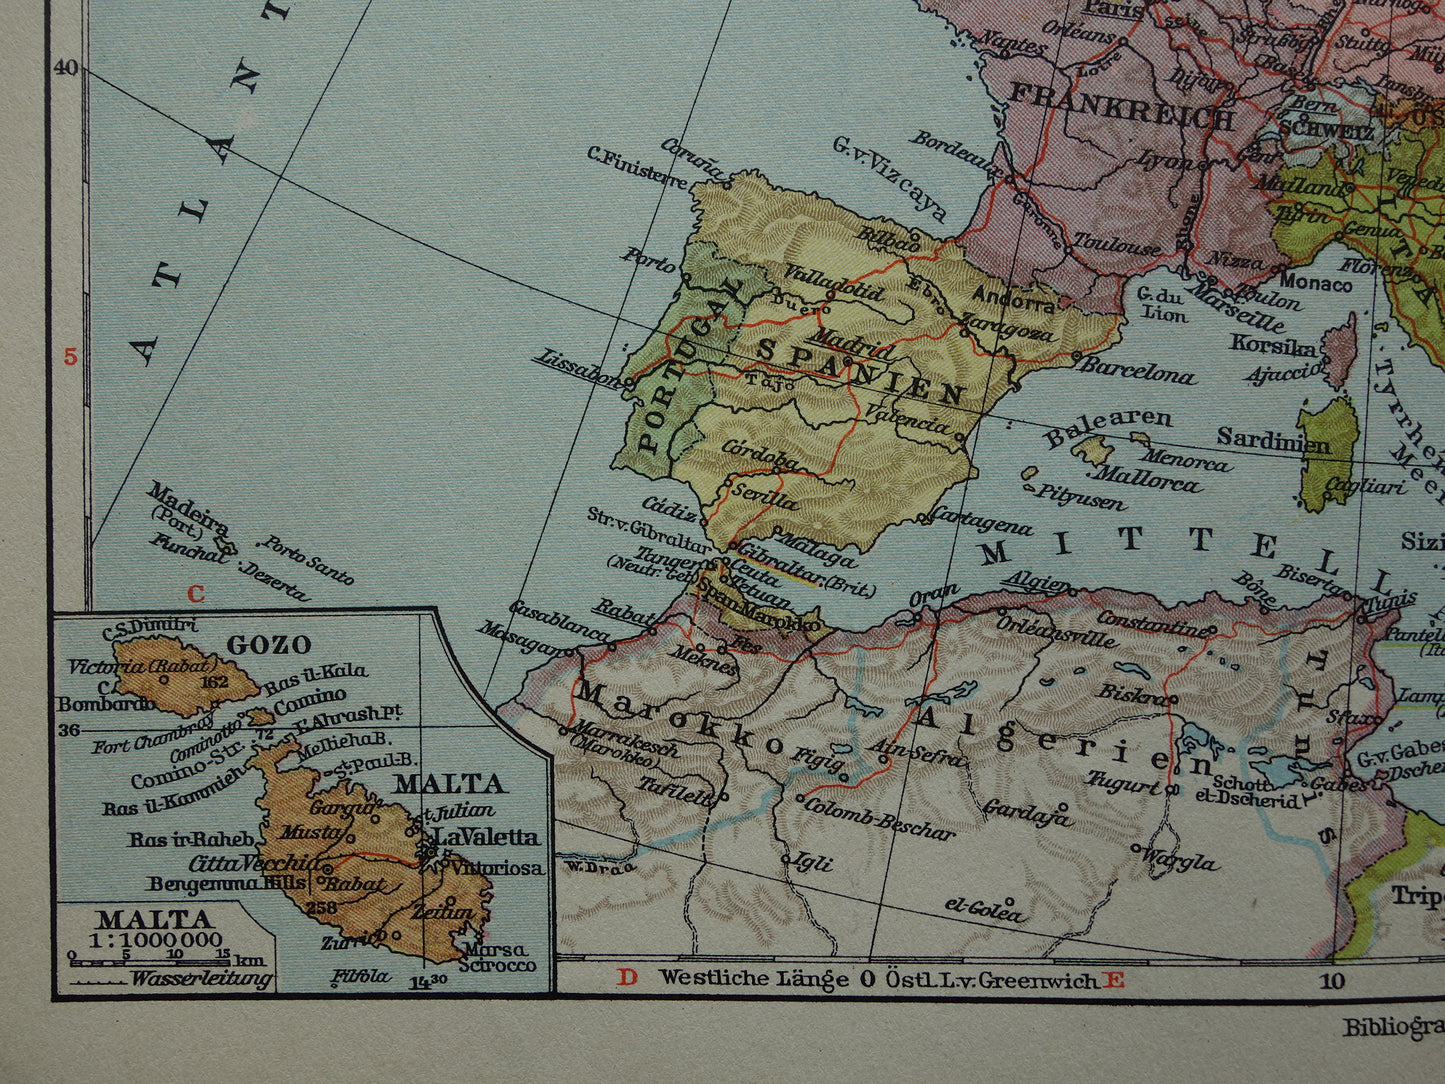 EUROPA Vintage landkaart van Europa uit 1928 originele oude kaart Europa historische kaarten